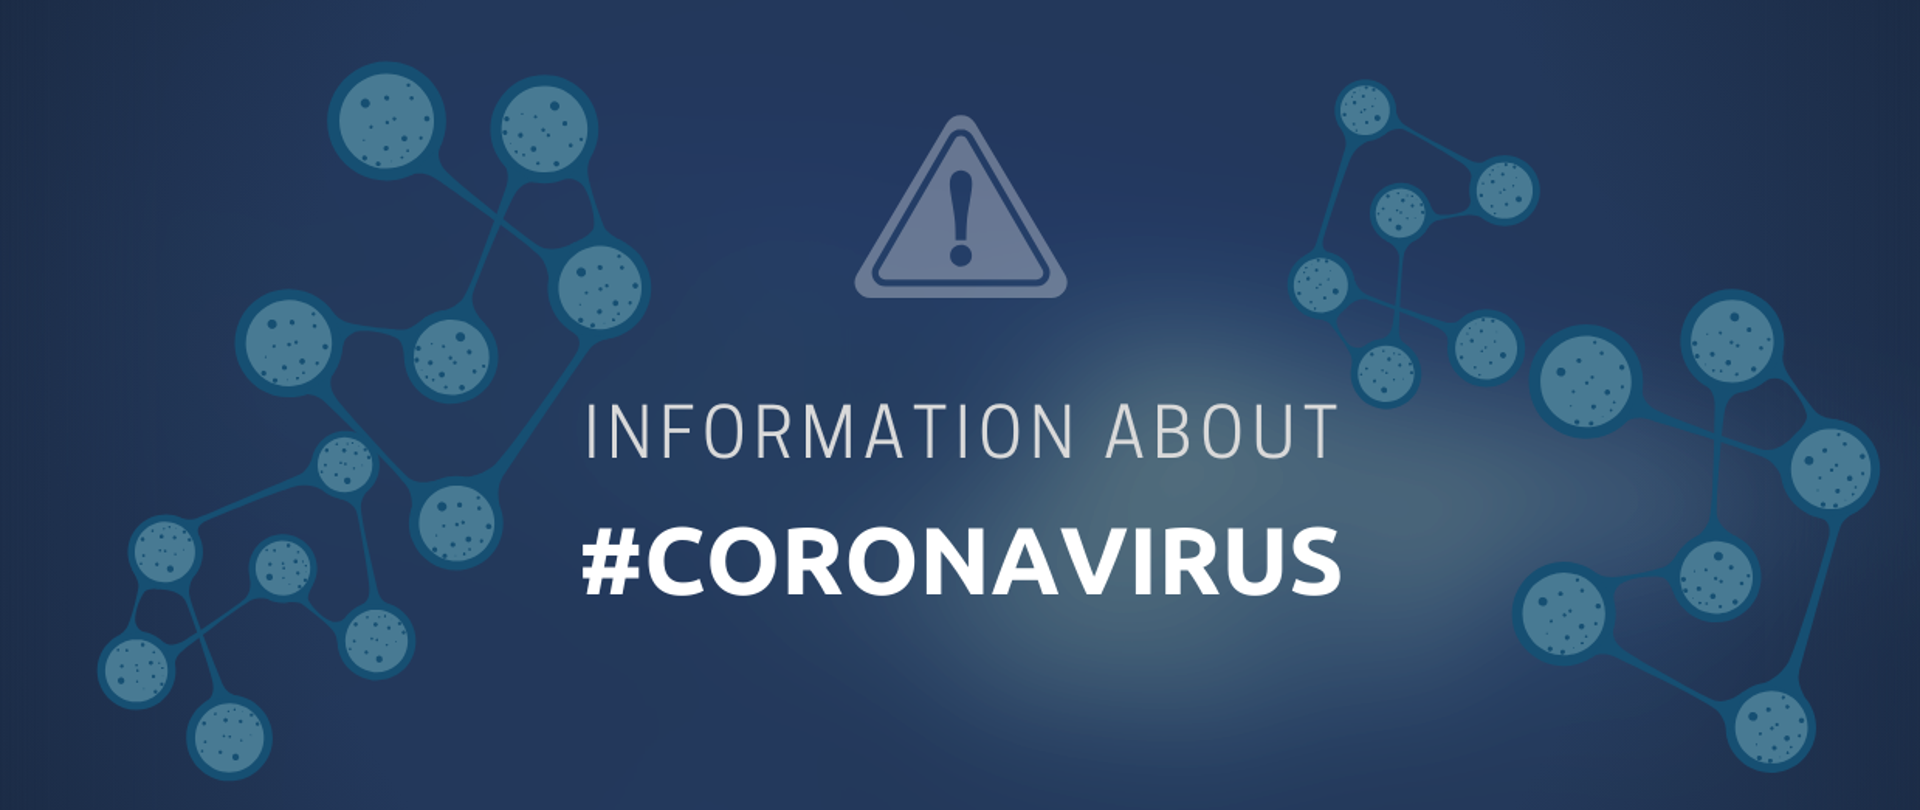 Information about coronavirus